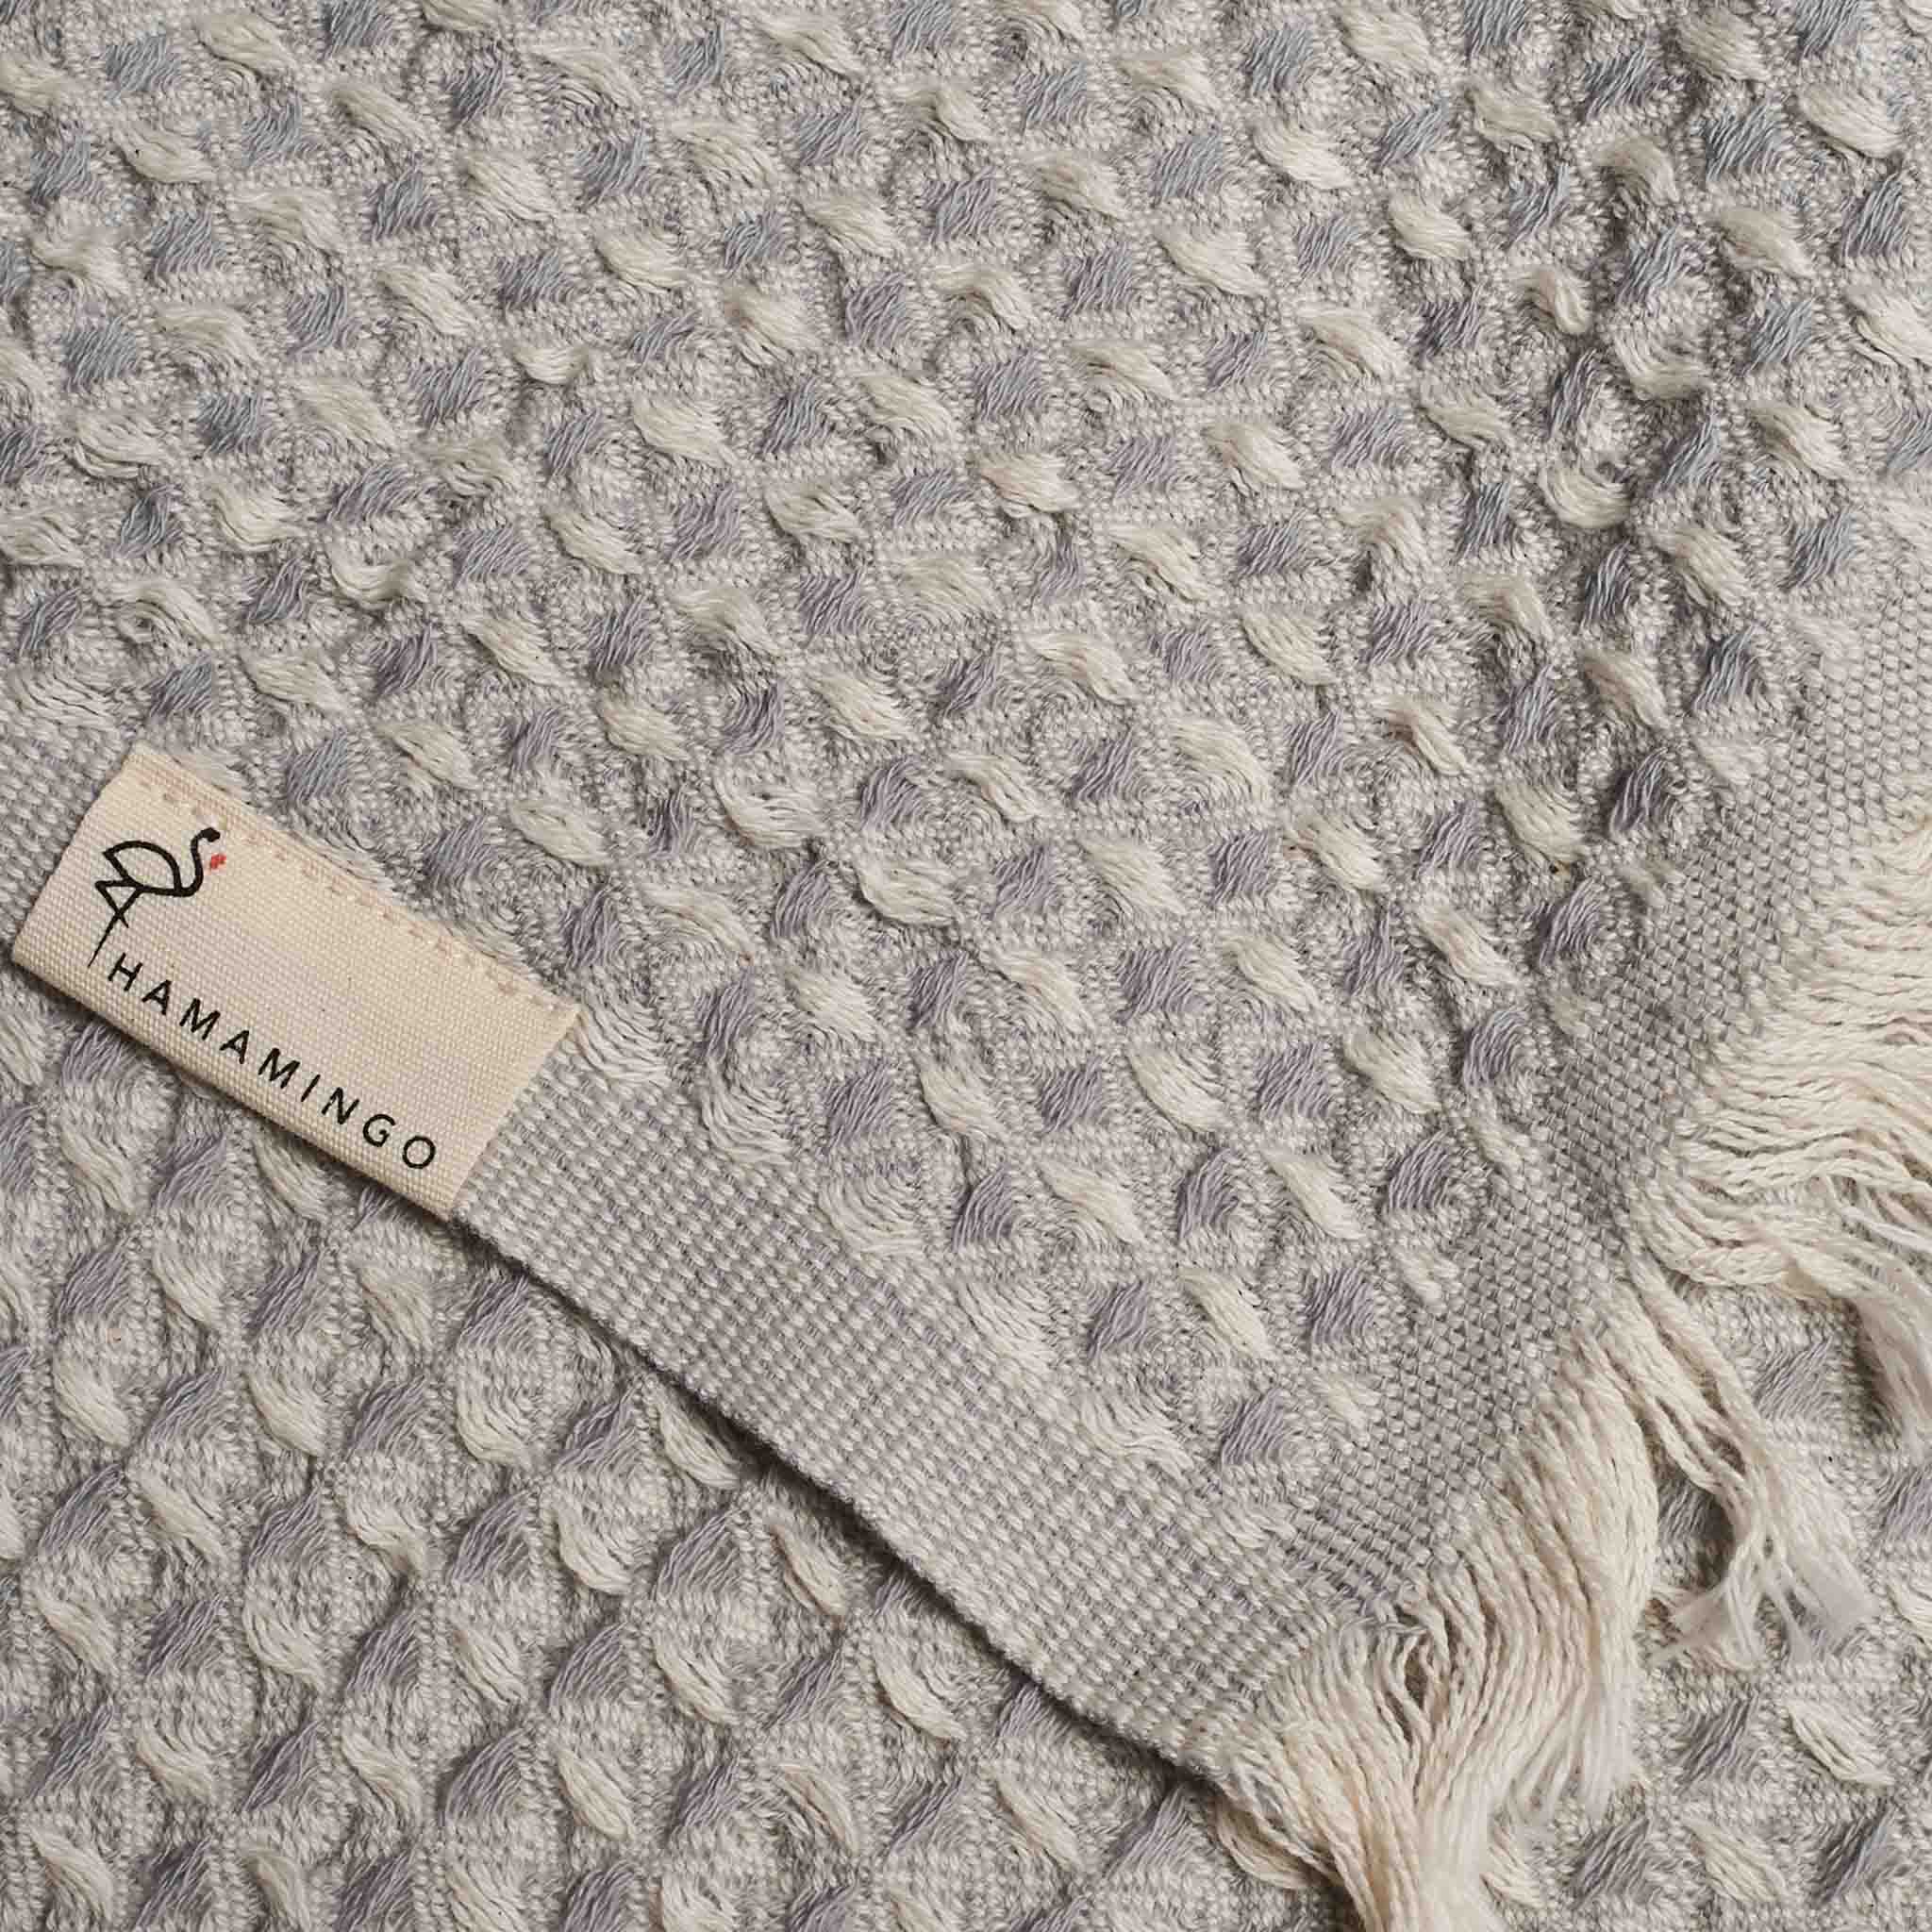 Bruges Towel Silver Grey & White - HAMAMINGO